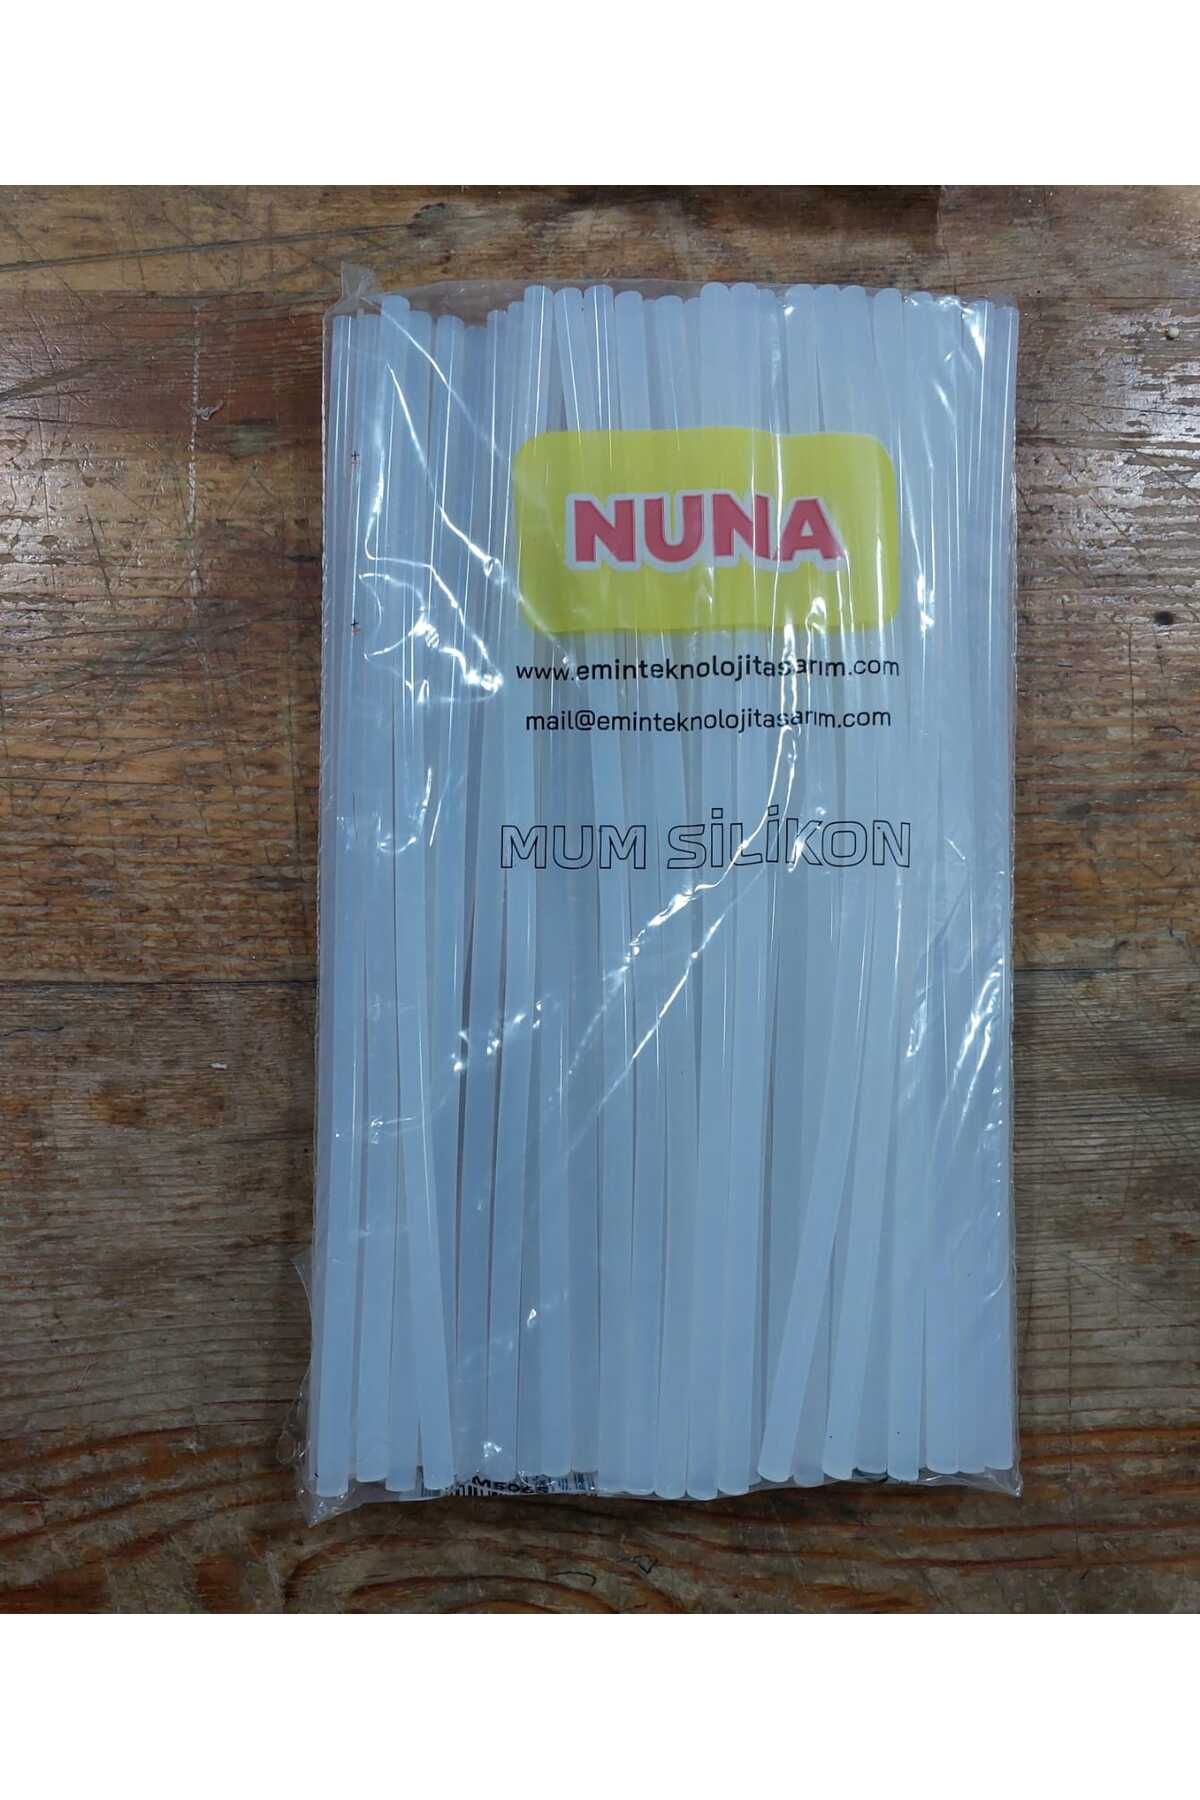 Nuna Mum Silikon 1 Kg İNCE (70 Adet), Yapıştırıcı, Çubuk Silikon, Silikon, Nuna